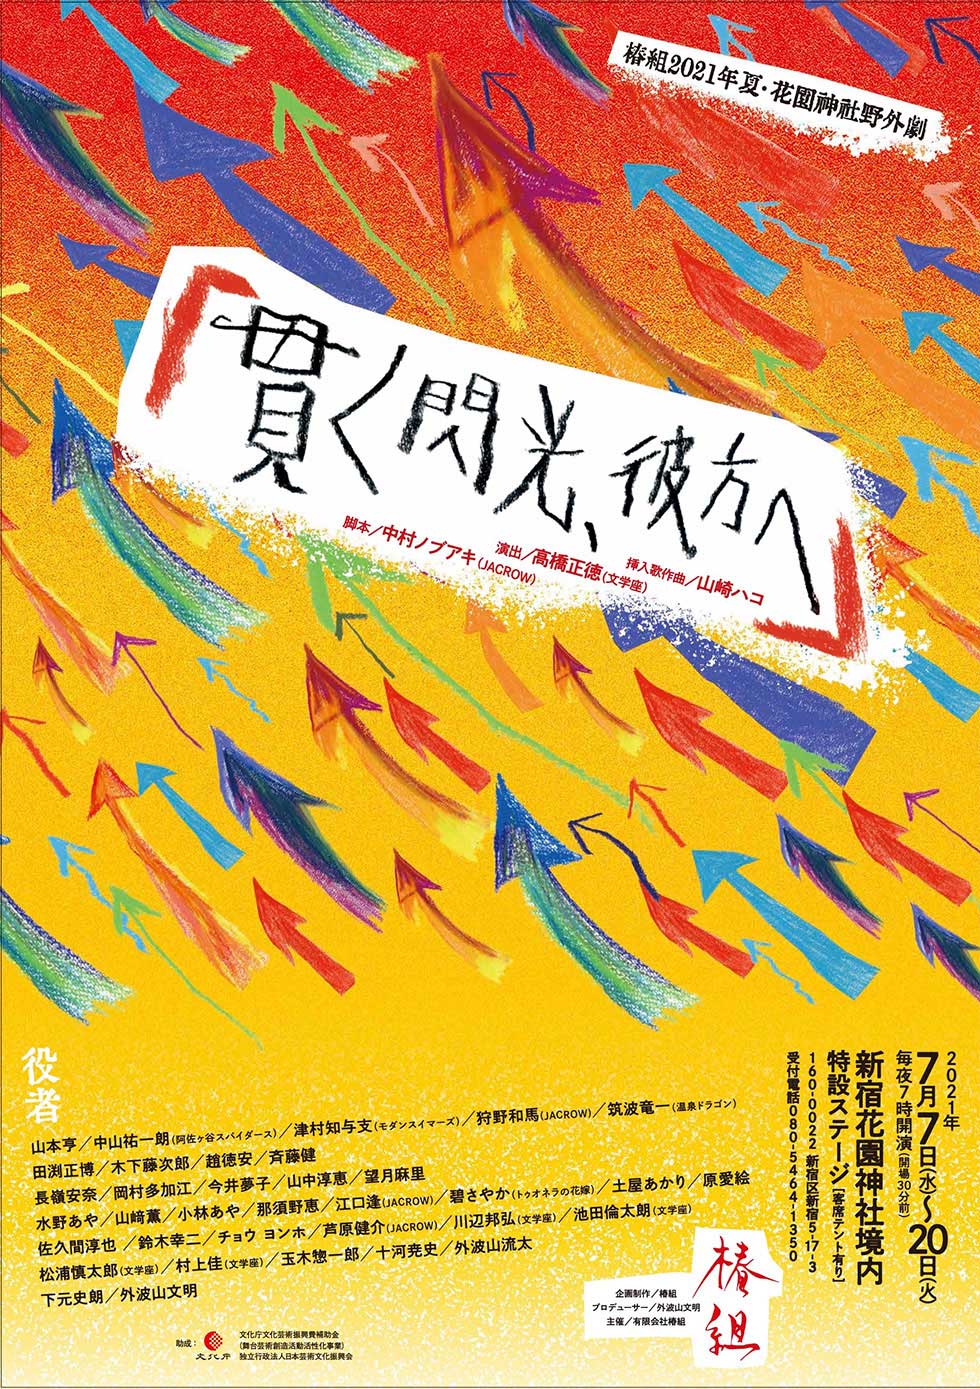 「芙蓉咲く路地のサーガ」 ~熊野にありし男の物語~チラシ表